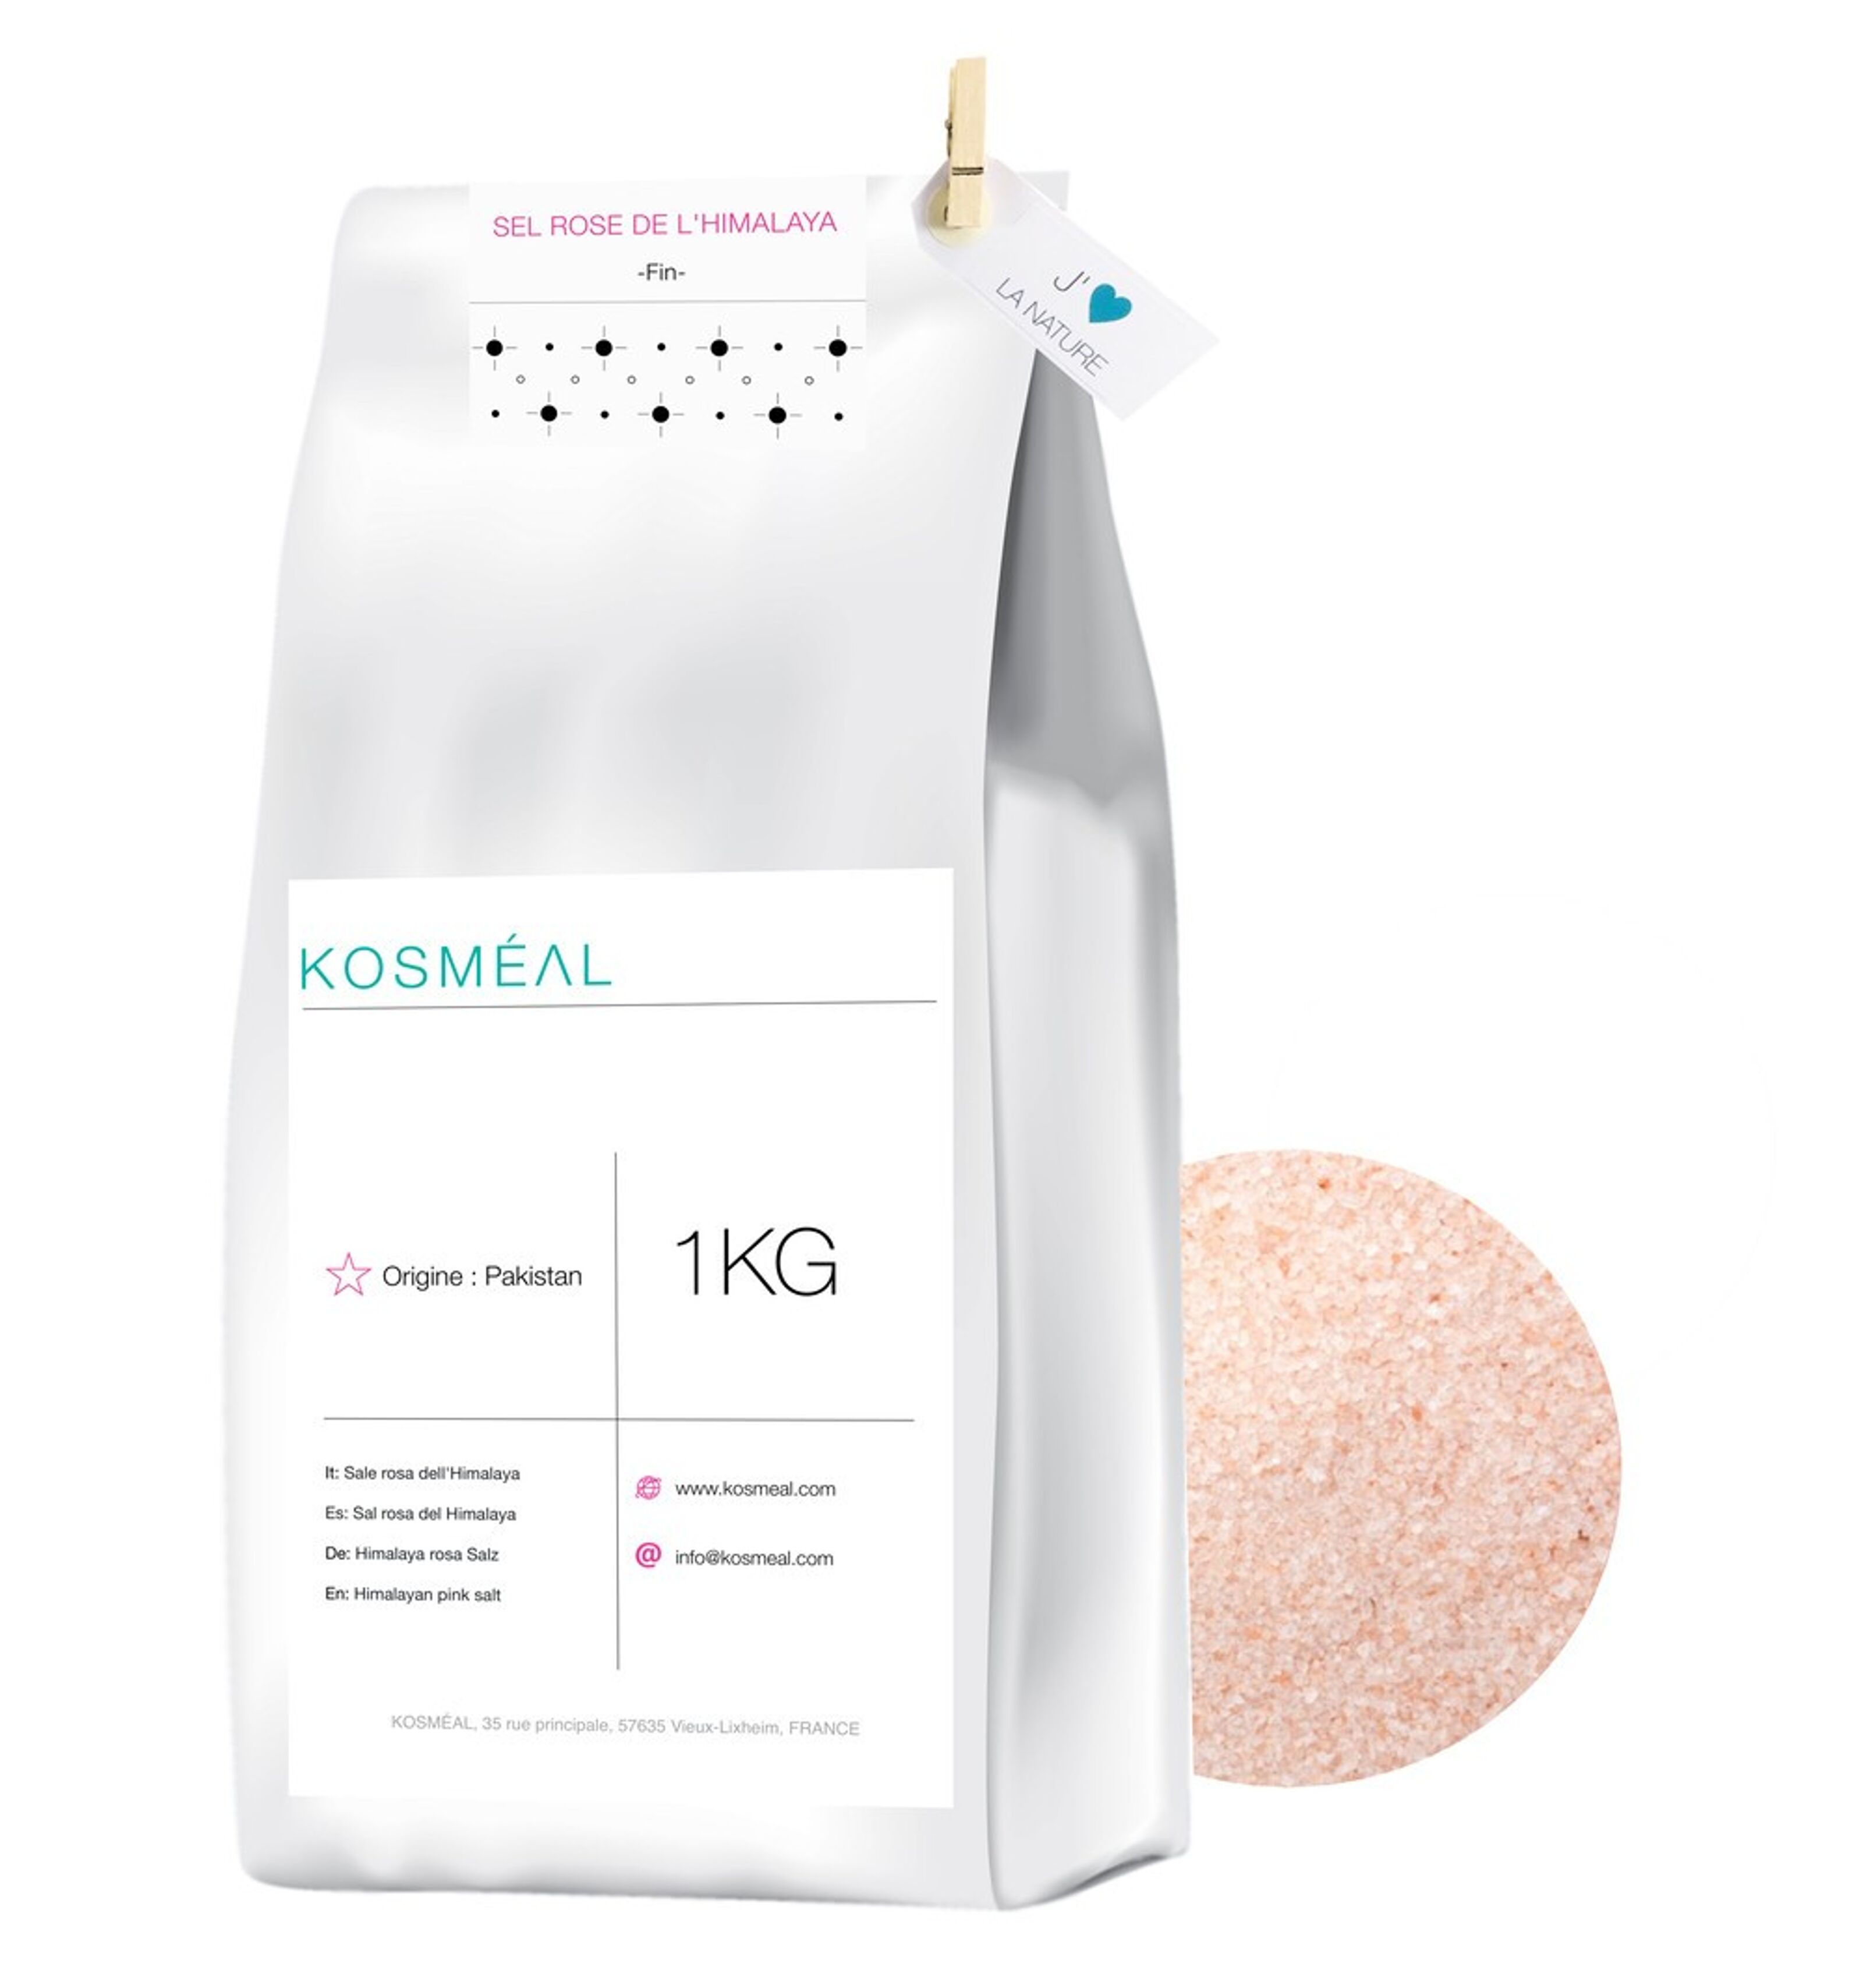 40% off - Himalayan Pink Salt Powder Grain - Salt Table